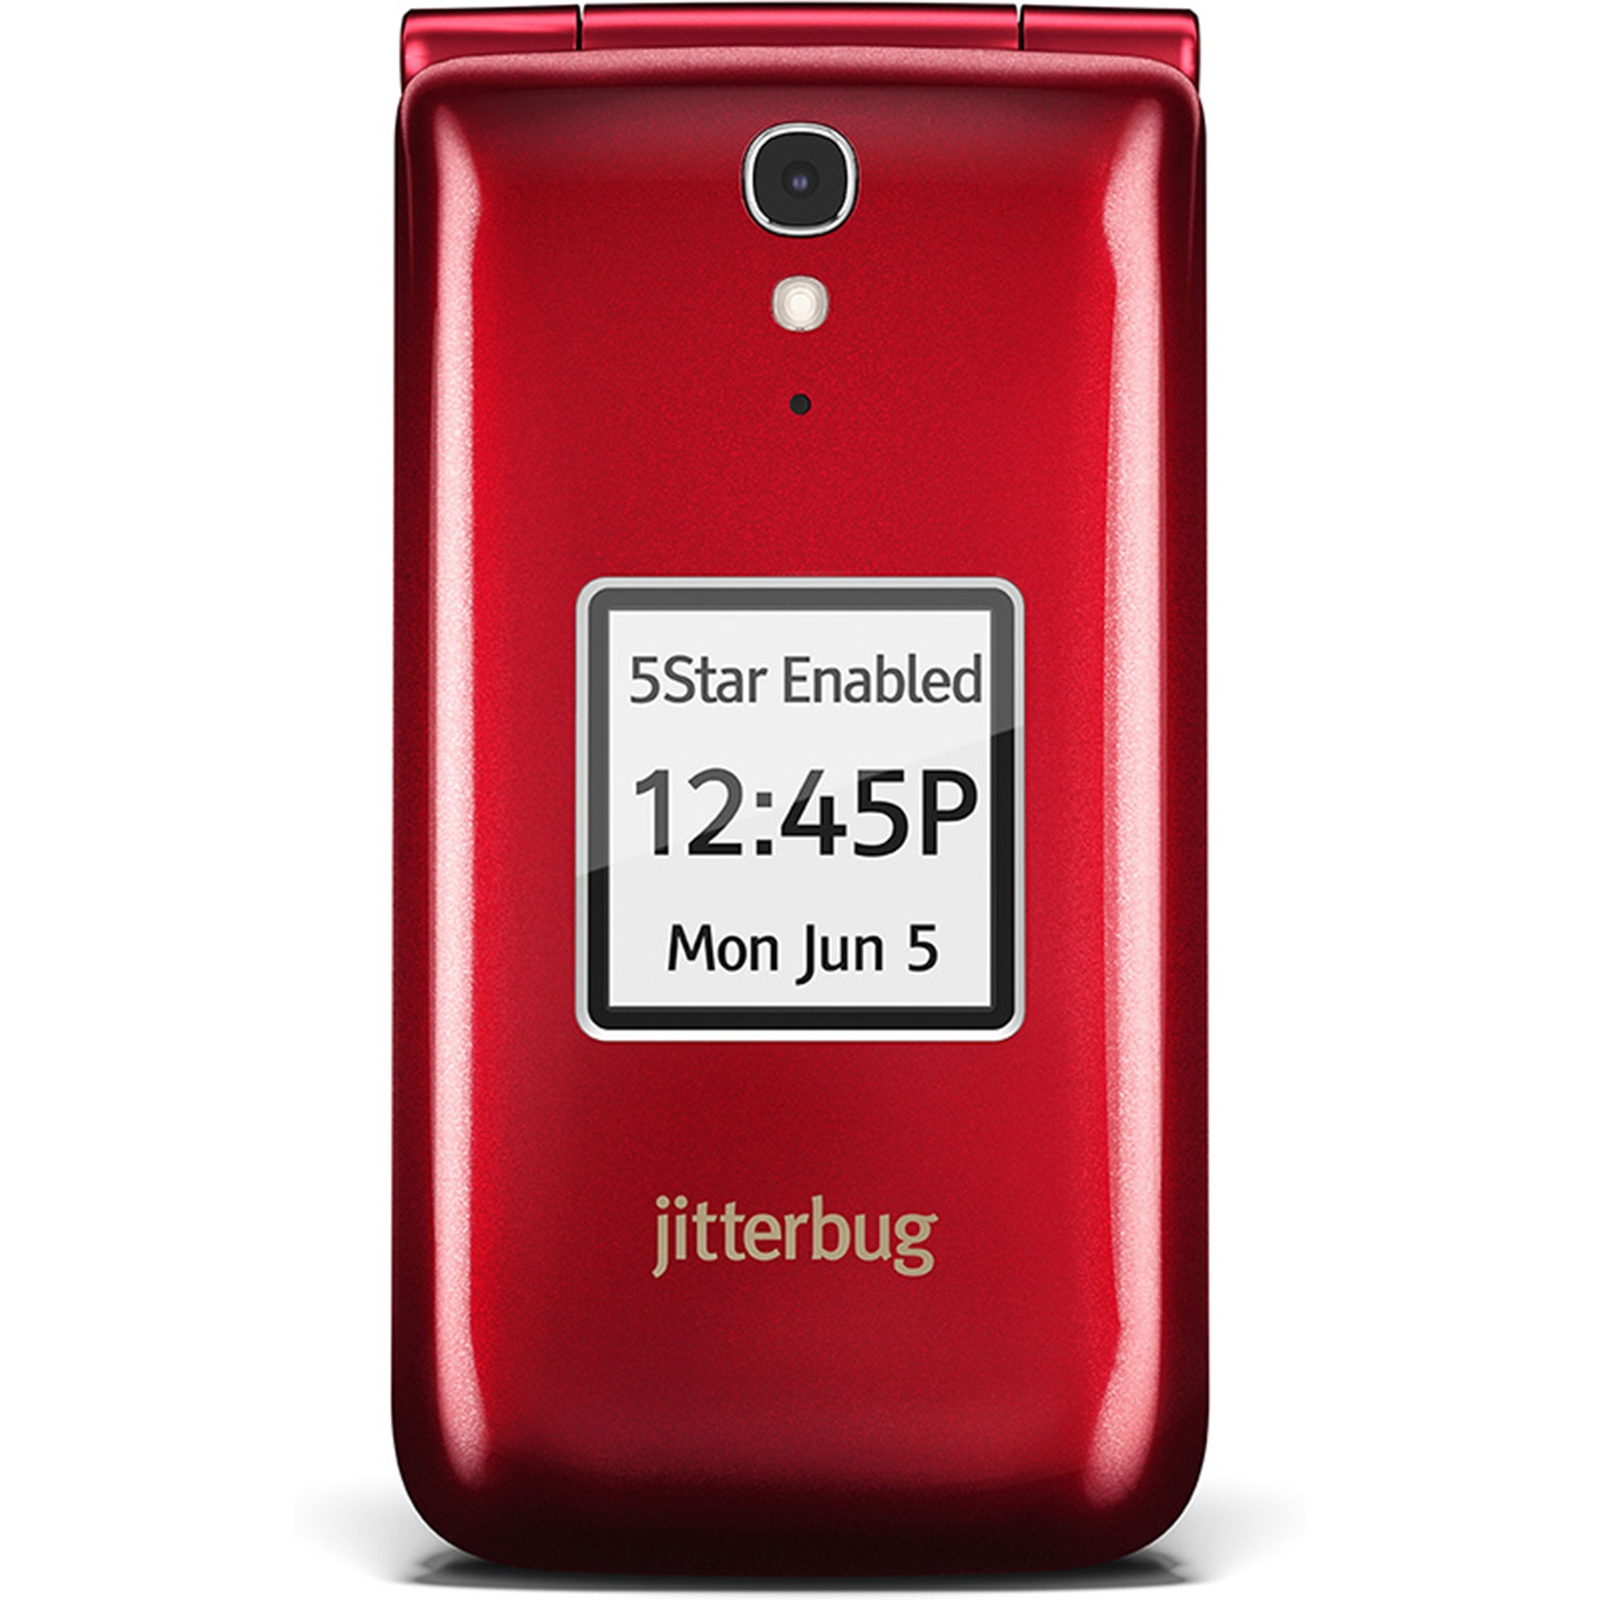 Jitterbug NJB6C1819IGRC Flip EasytoUse Cell Phone for Seniors by